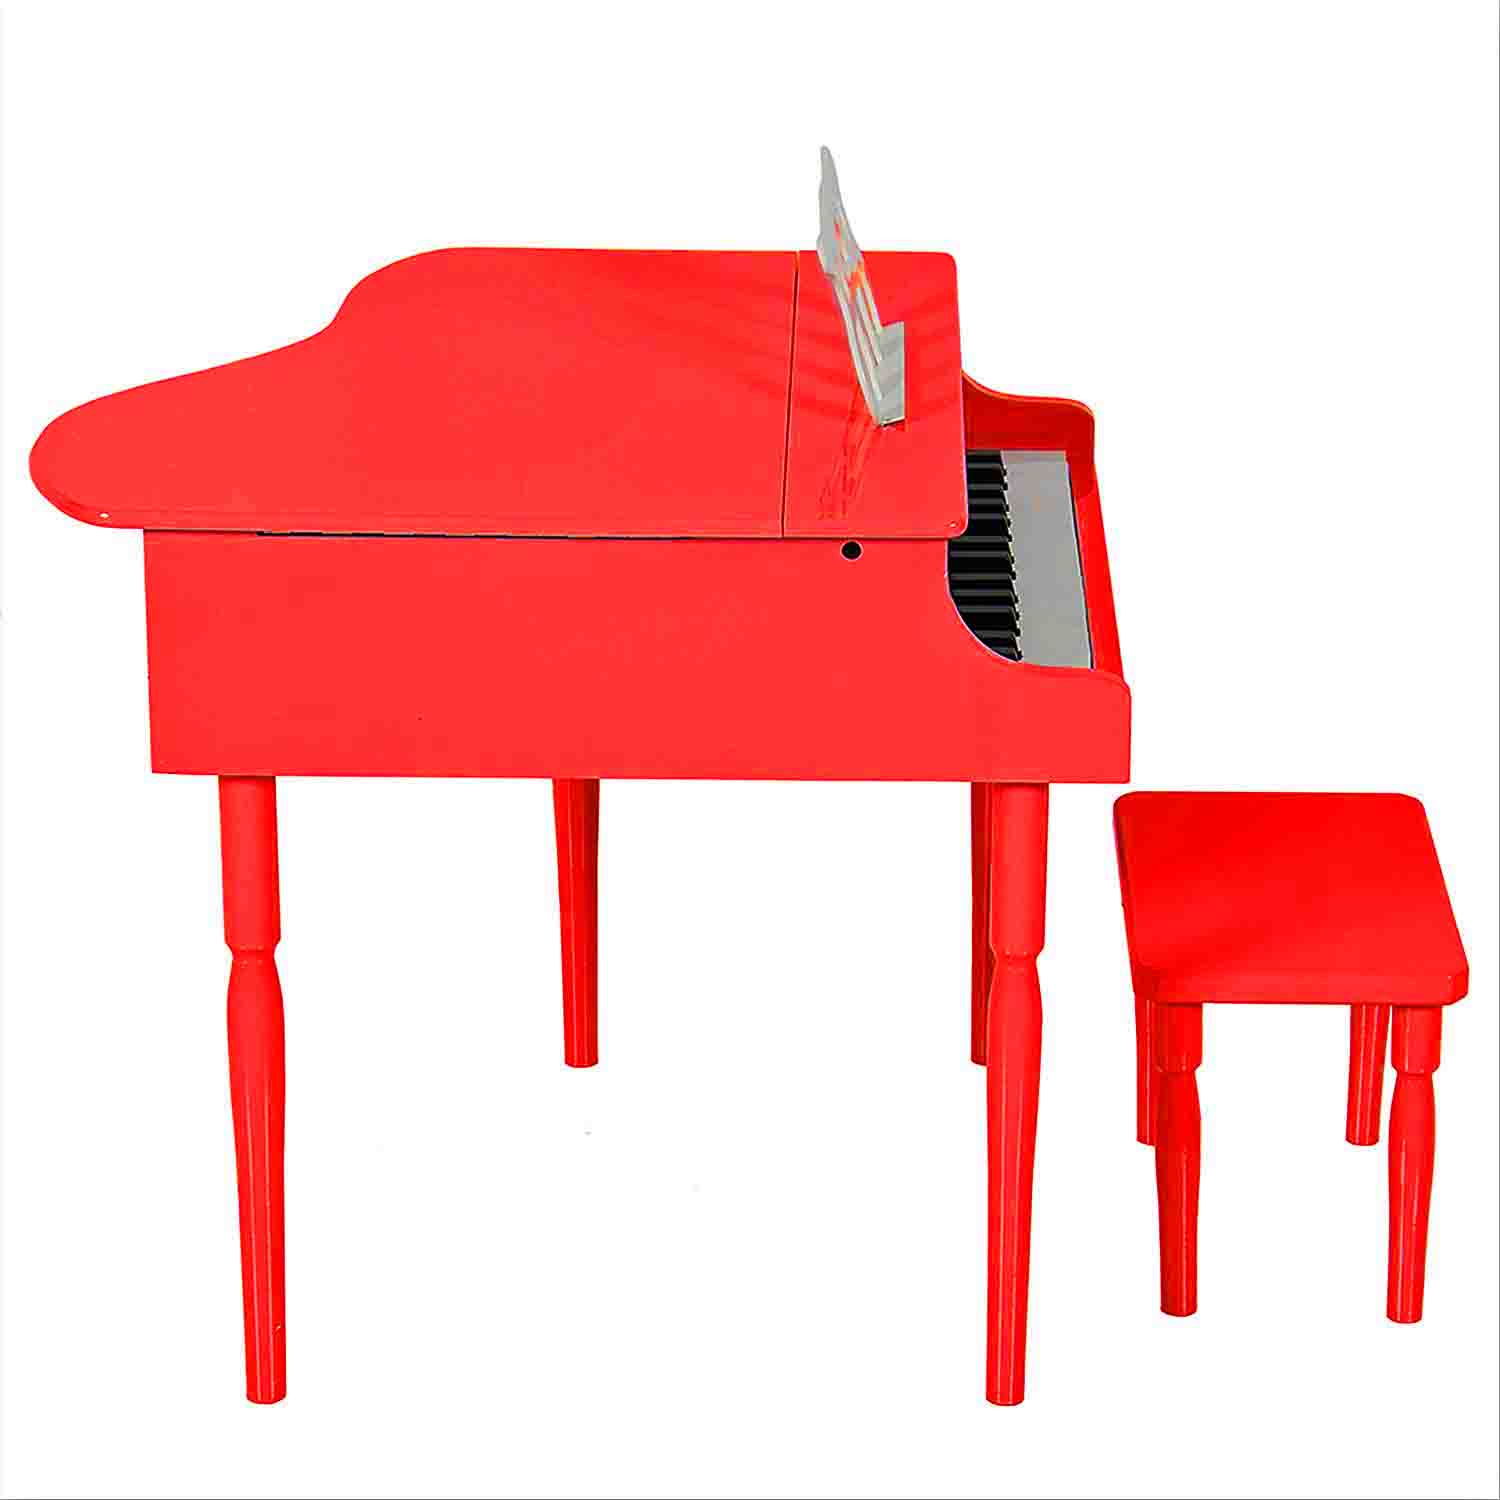 Çocuk için Ahşap Piyano BP30RD nota sehpası ve tabure Hediyeli